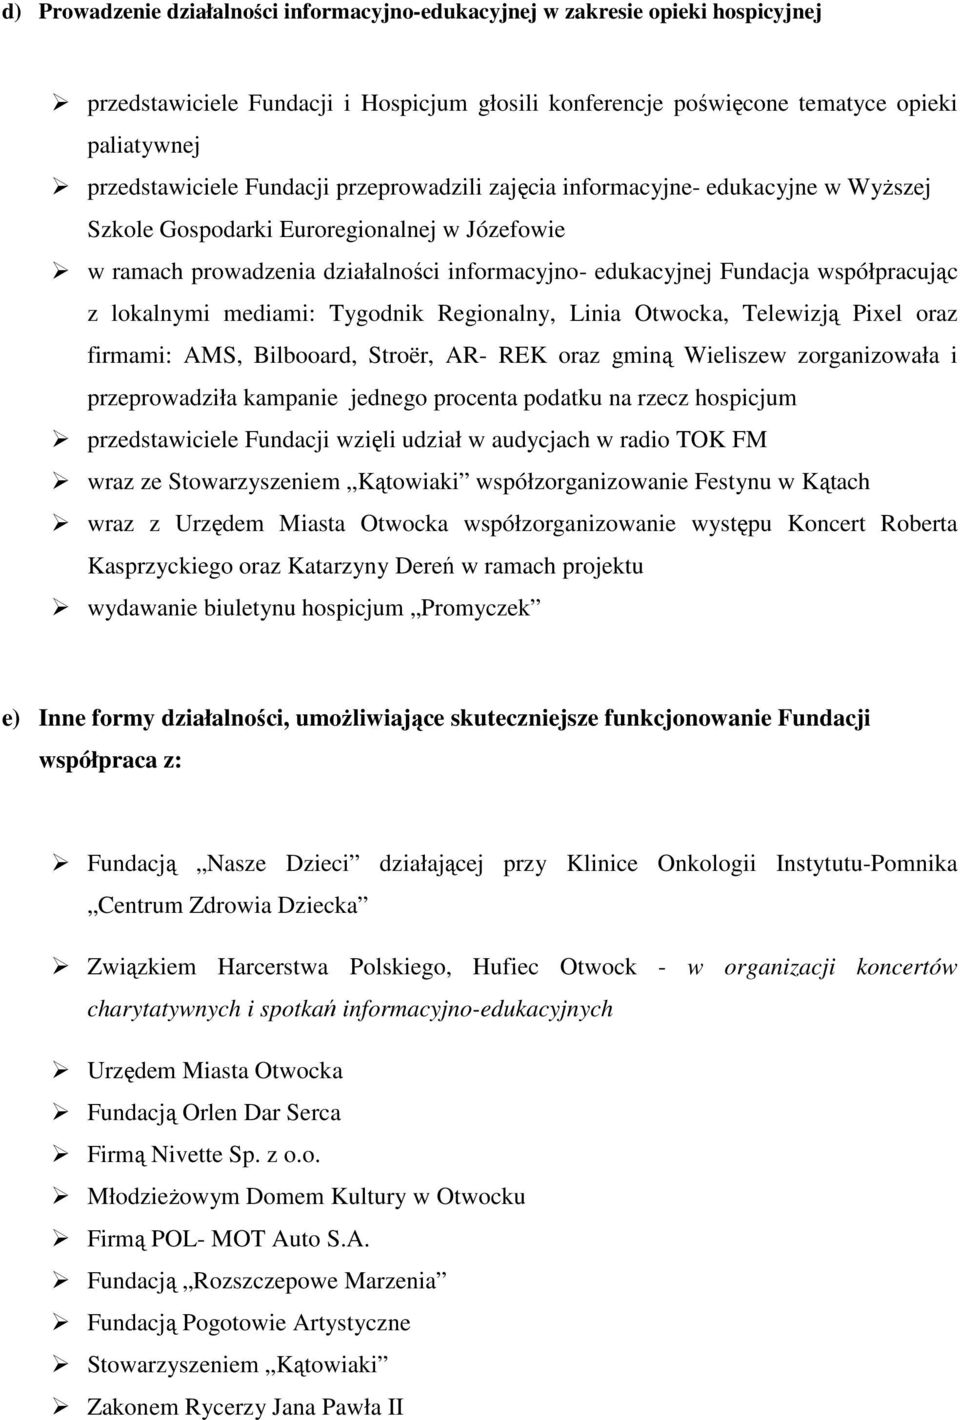 lokalnymi mediami: Tygodnik Regionalny, Linia Otwocka, Telewizją Pixel oraz firmami: AMS, Bilbooard, Stroër, AR- REK oraz gminą Wieliszew zorganizowała i przeprowadziła kampanie jednego procenta